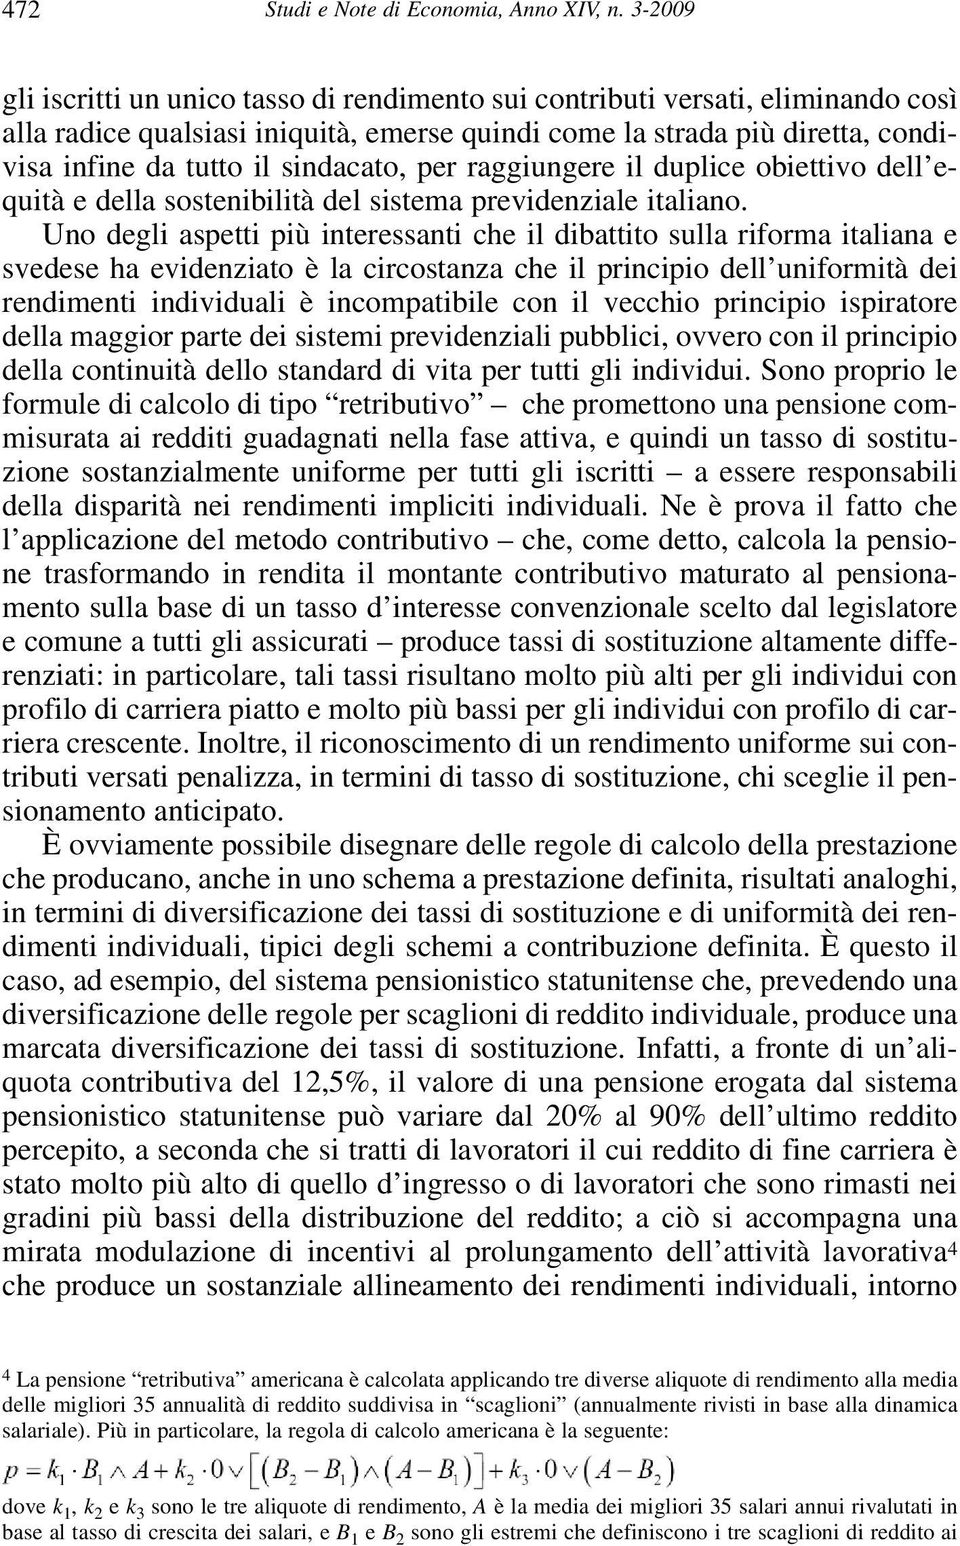 sindacato, per raggiungere il duplice obiettivo dell equità e della sostenibilità del sistema previdenziale italiano.